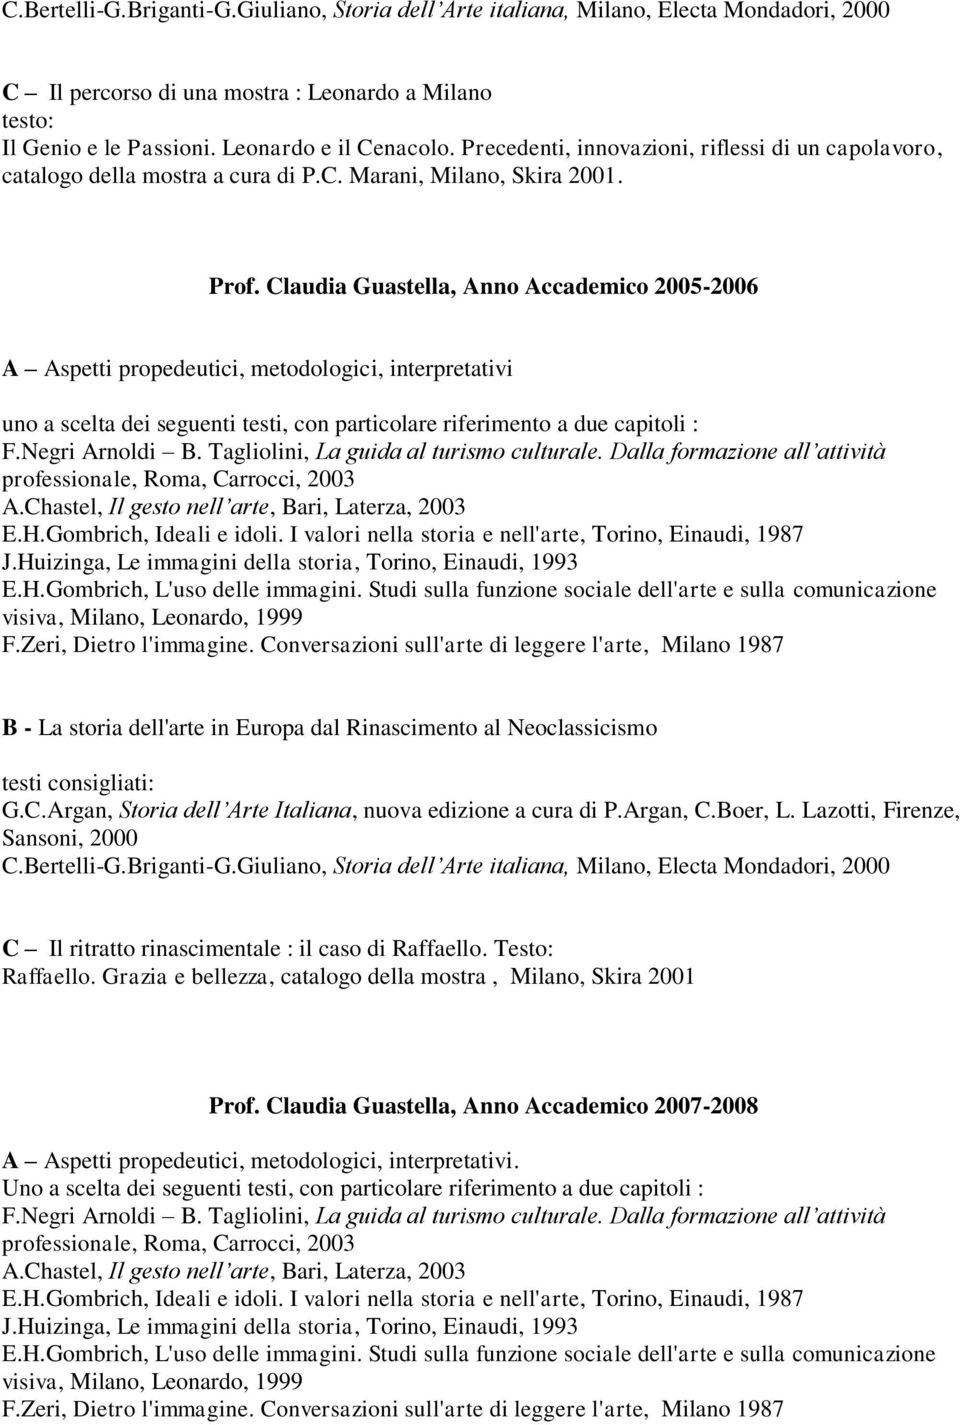 Claudia Guastella, Anno Accademico 2005-2006 C Il ritratto rinascimentale : il caso di Raffaello. Testo: Raffaello.